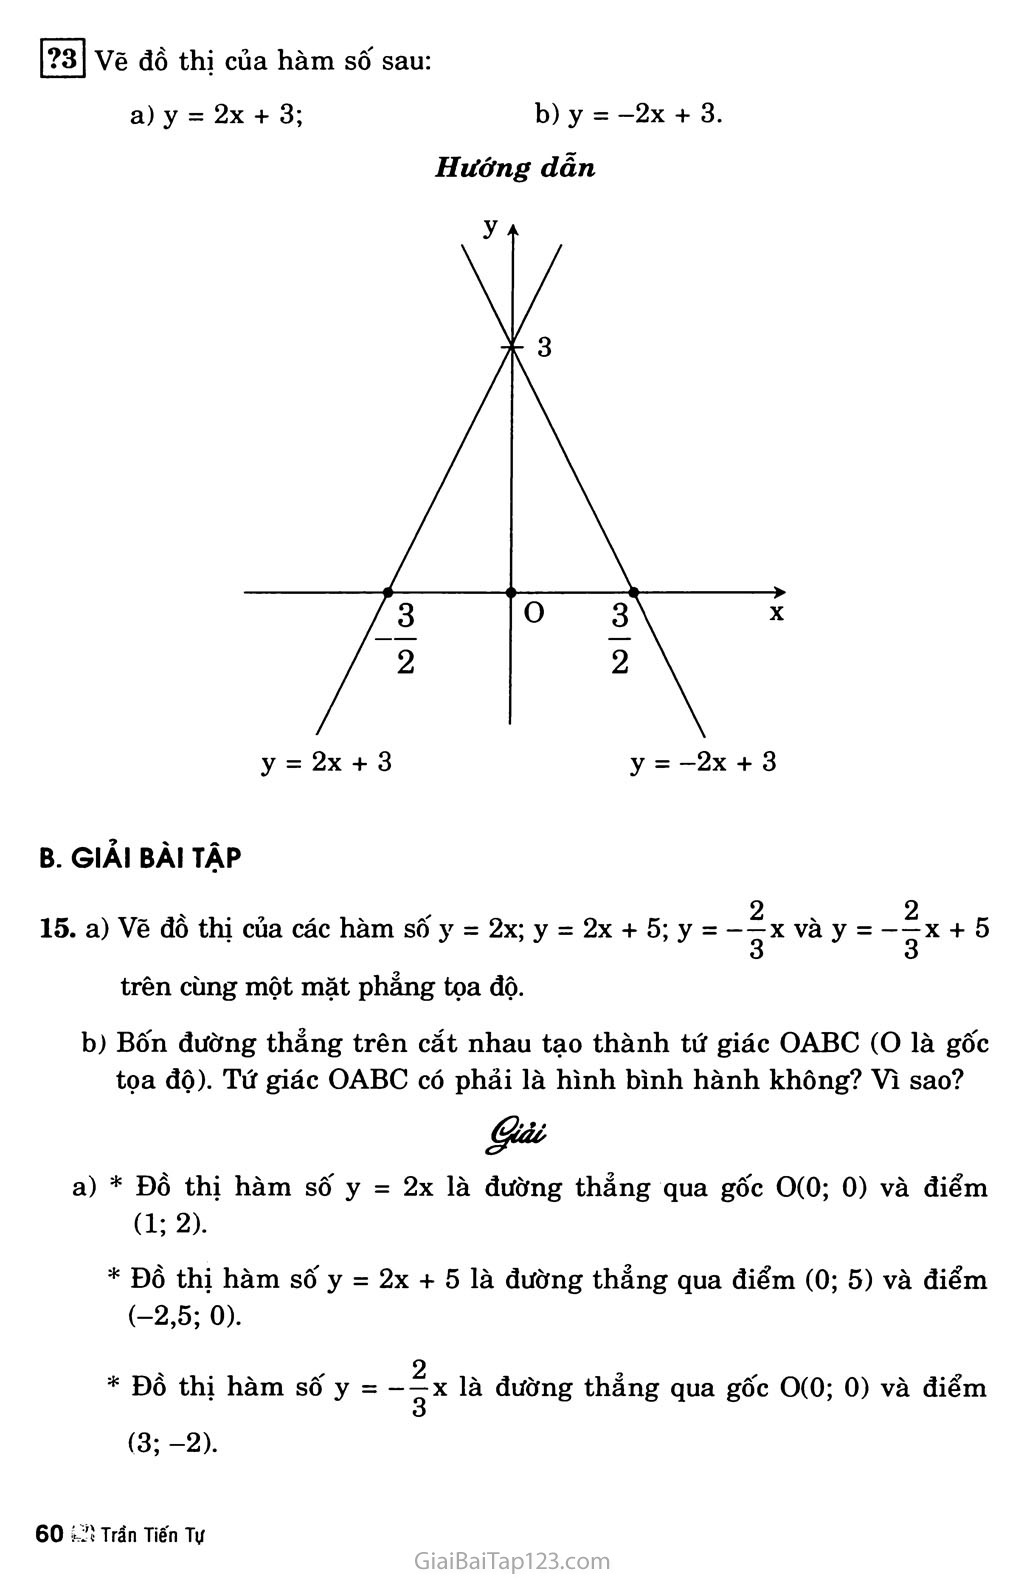 Bài 3. Đồ thị của hàm số y = ax + b (a khác 0) trang 2